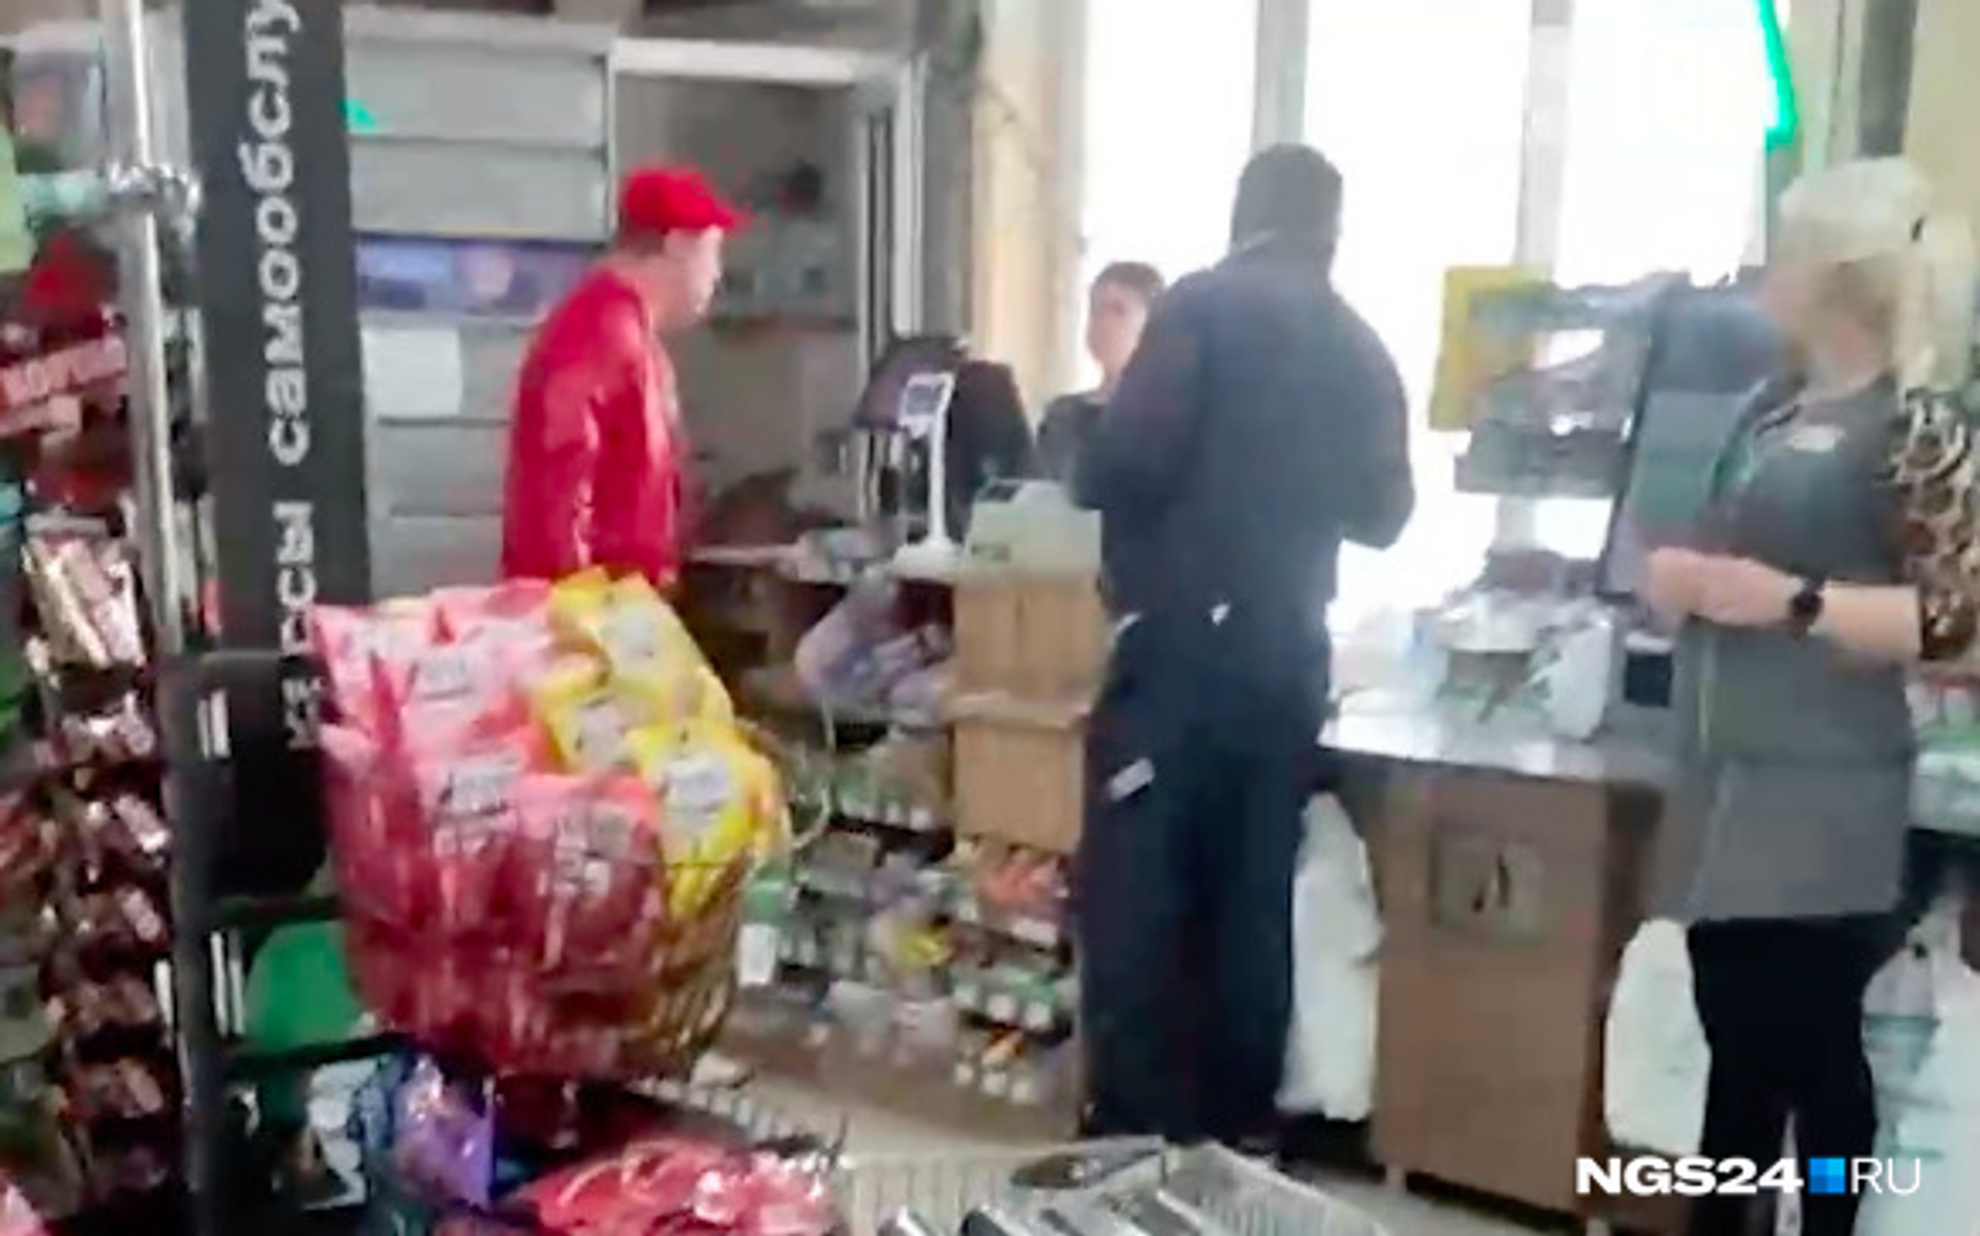 Красноярцы орали в магазине про ФСБ и называли покупателя «потенциальным террористом». Теперь на них в полиции три заявления